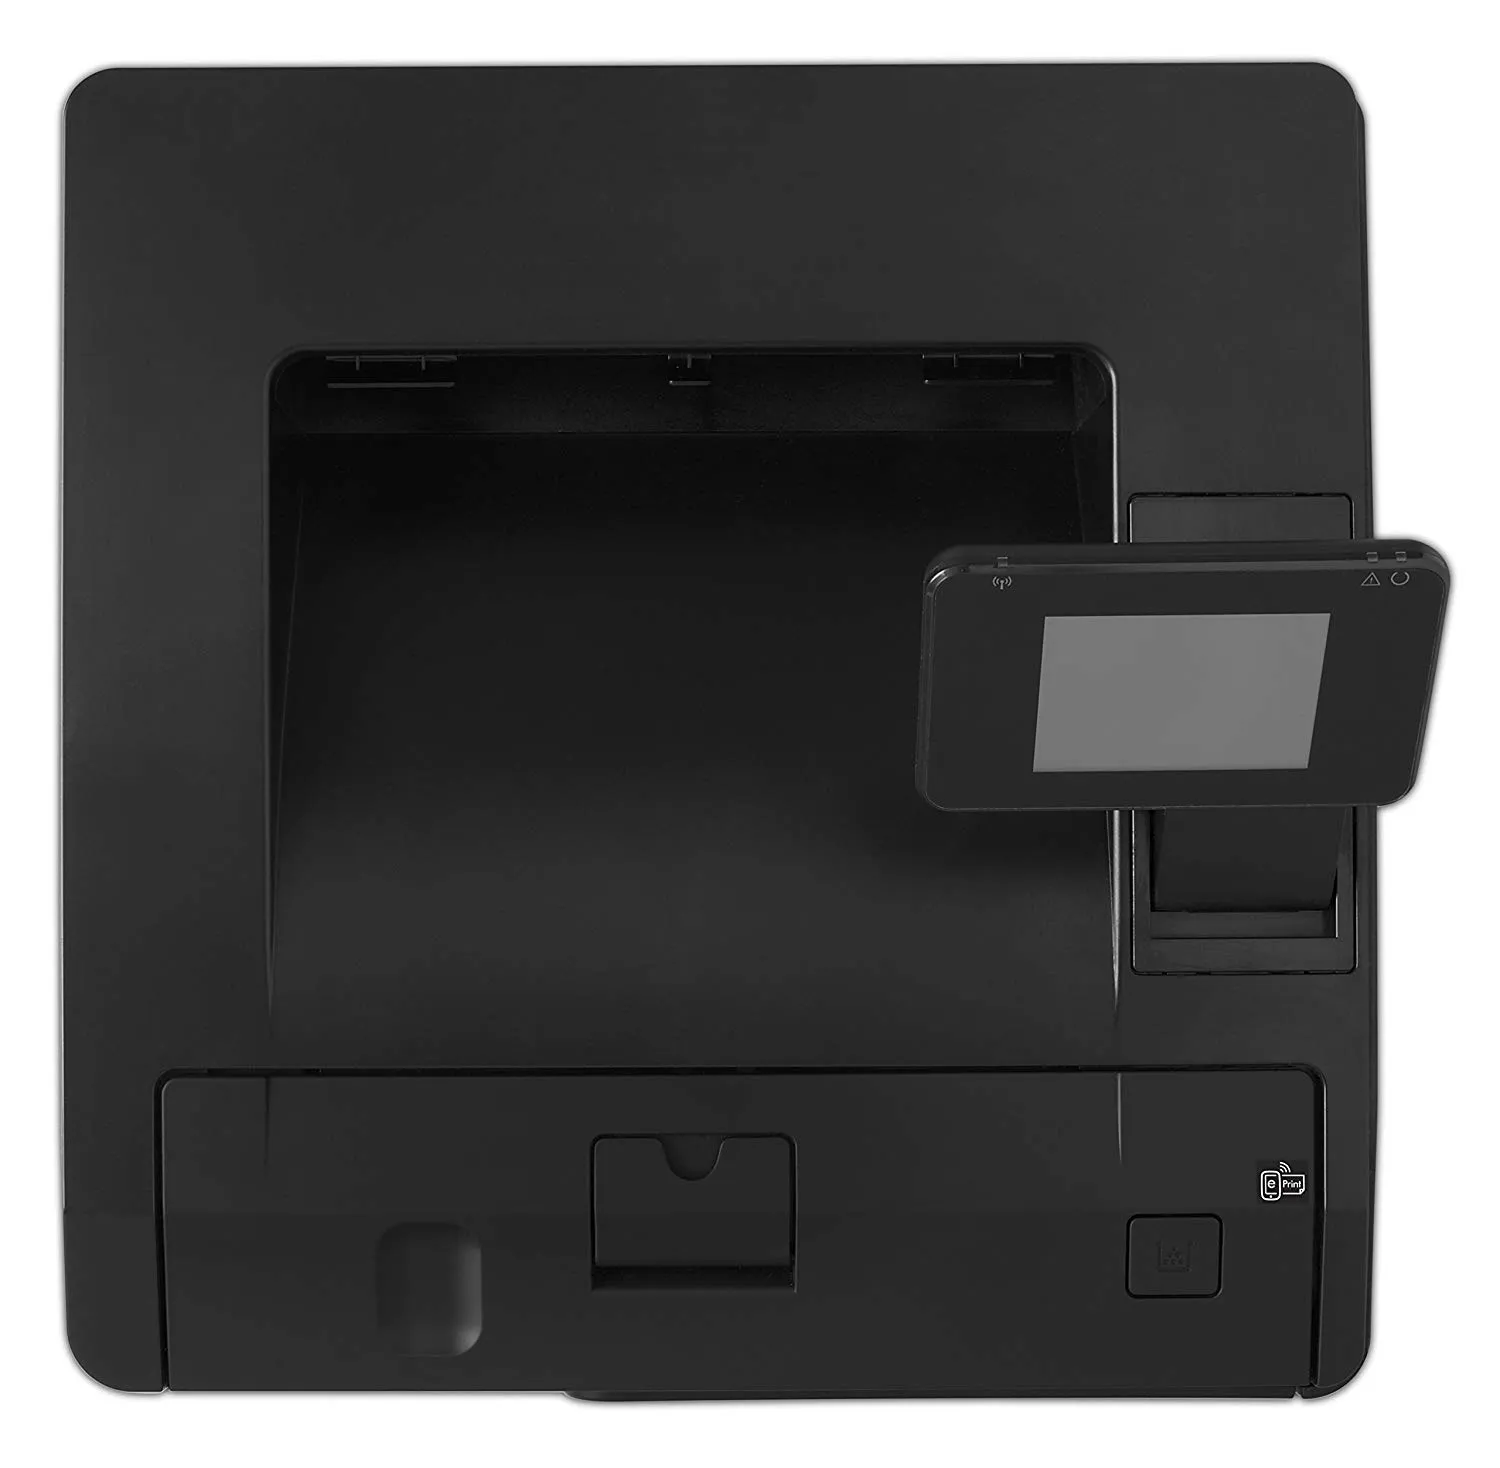 HP LaserJet Pro 400 M401d Printer (CF274A)#1